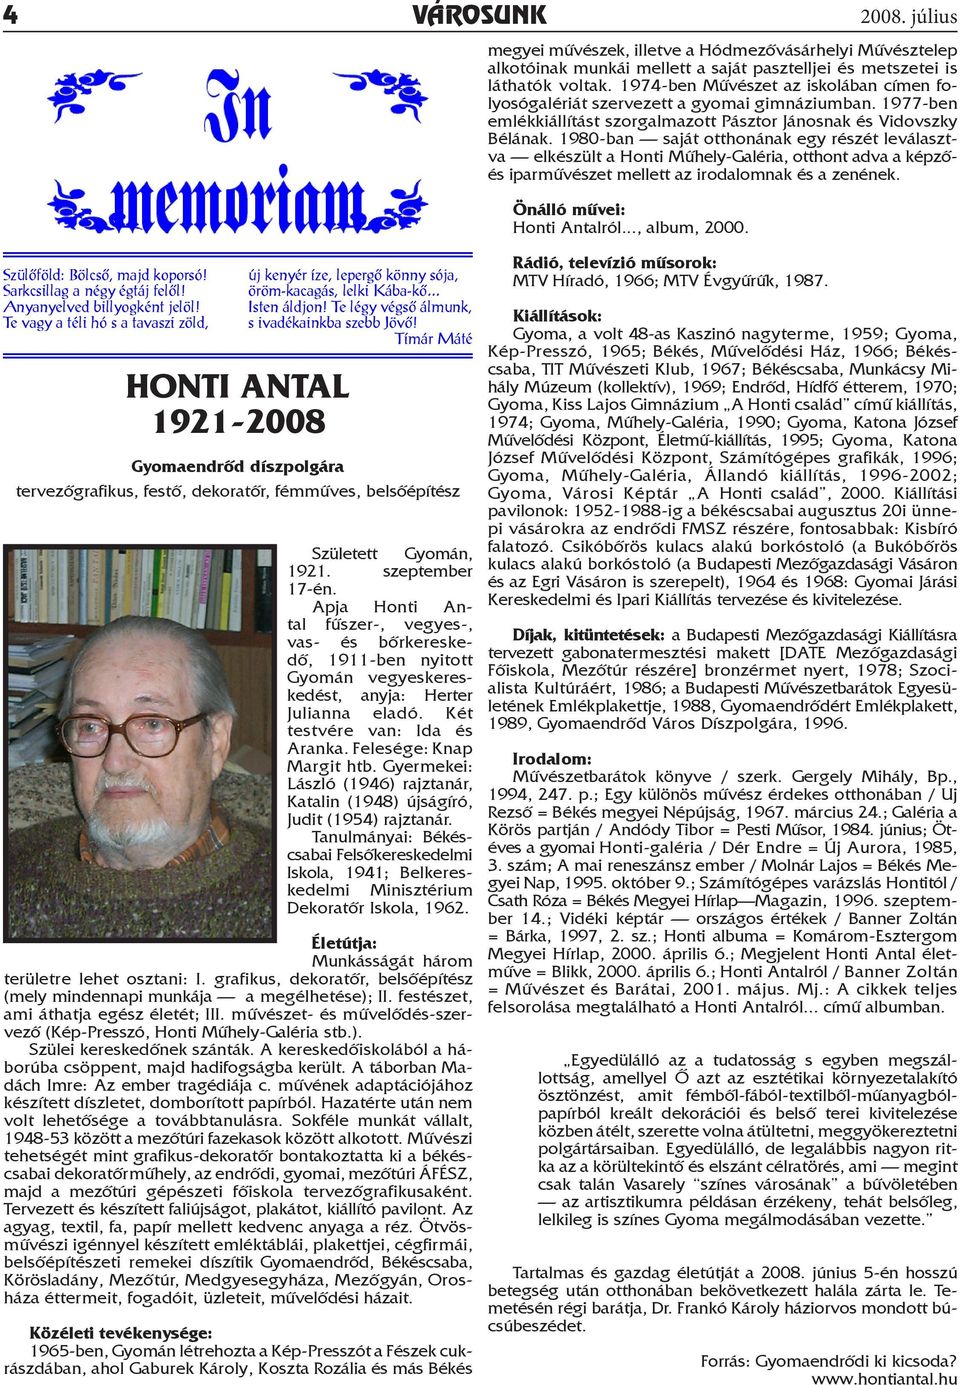 1980-ban saját otthonának egy részét leválasztva elkészült a Honti Műhely-Galéria, otthont adva a képzőés iparművészet mellett az irodalomnak és a zenének. Önálló művei: Honti Antalról..., album, 2000.